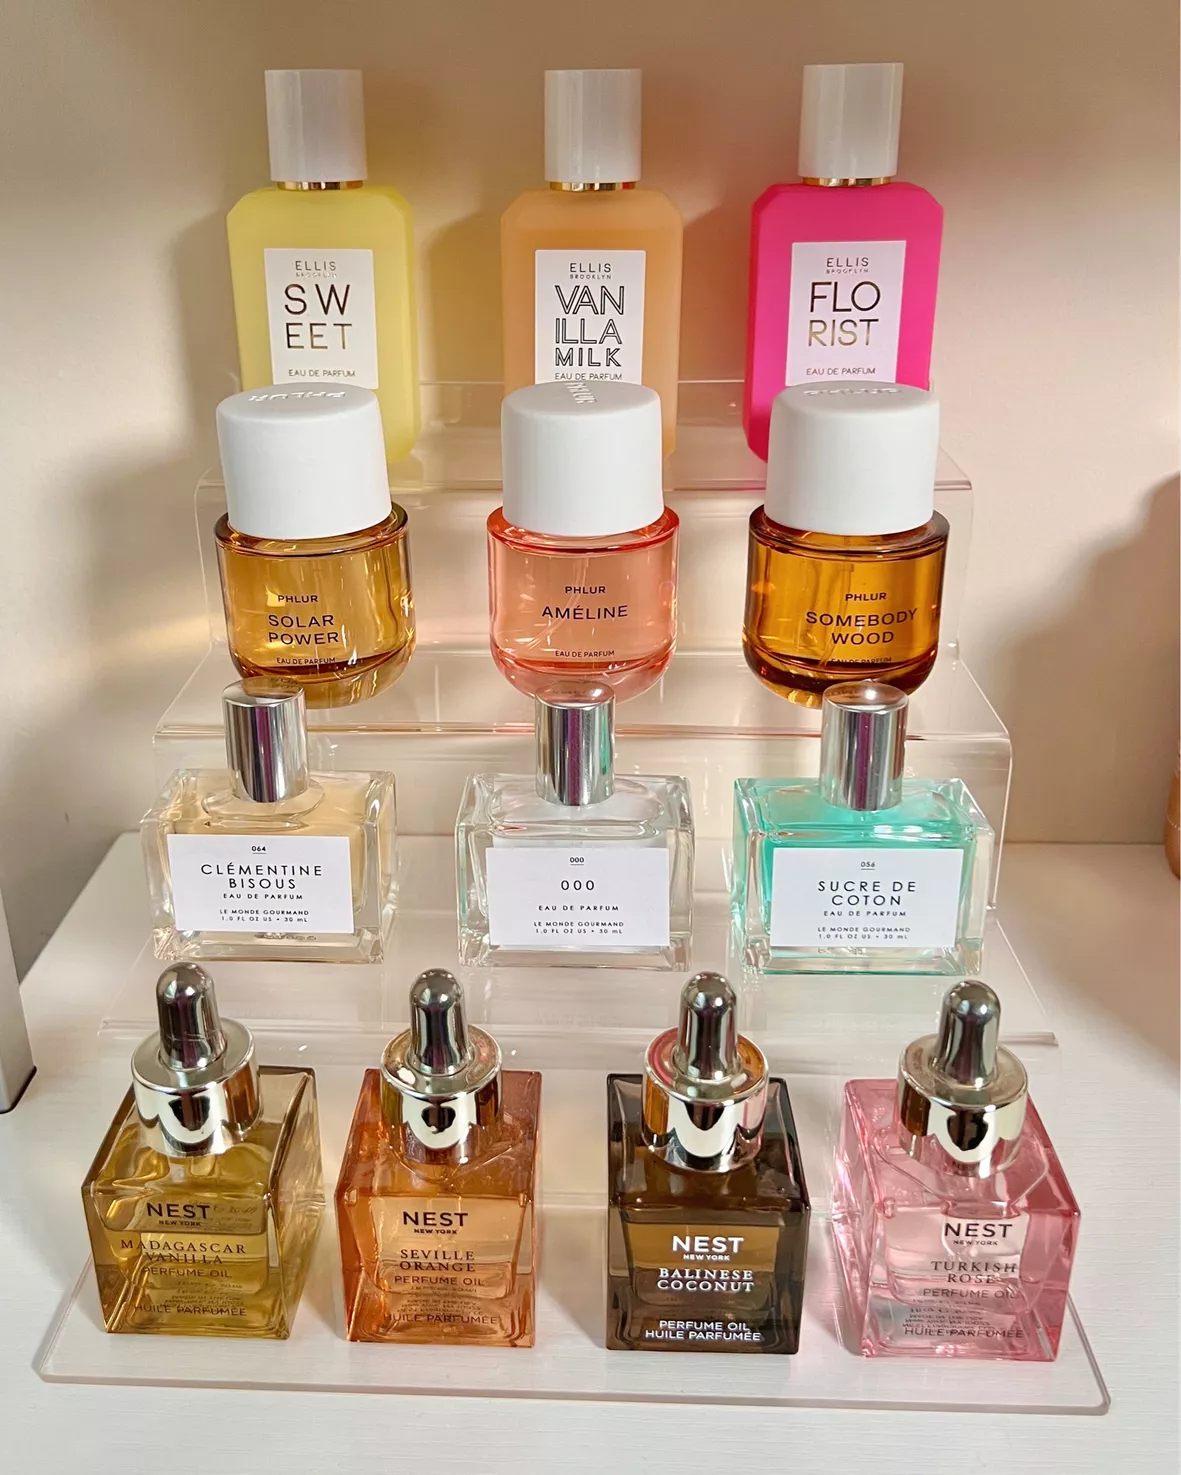 FLORIST Eau de Parfum - Ellis … curated on LTK